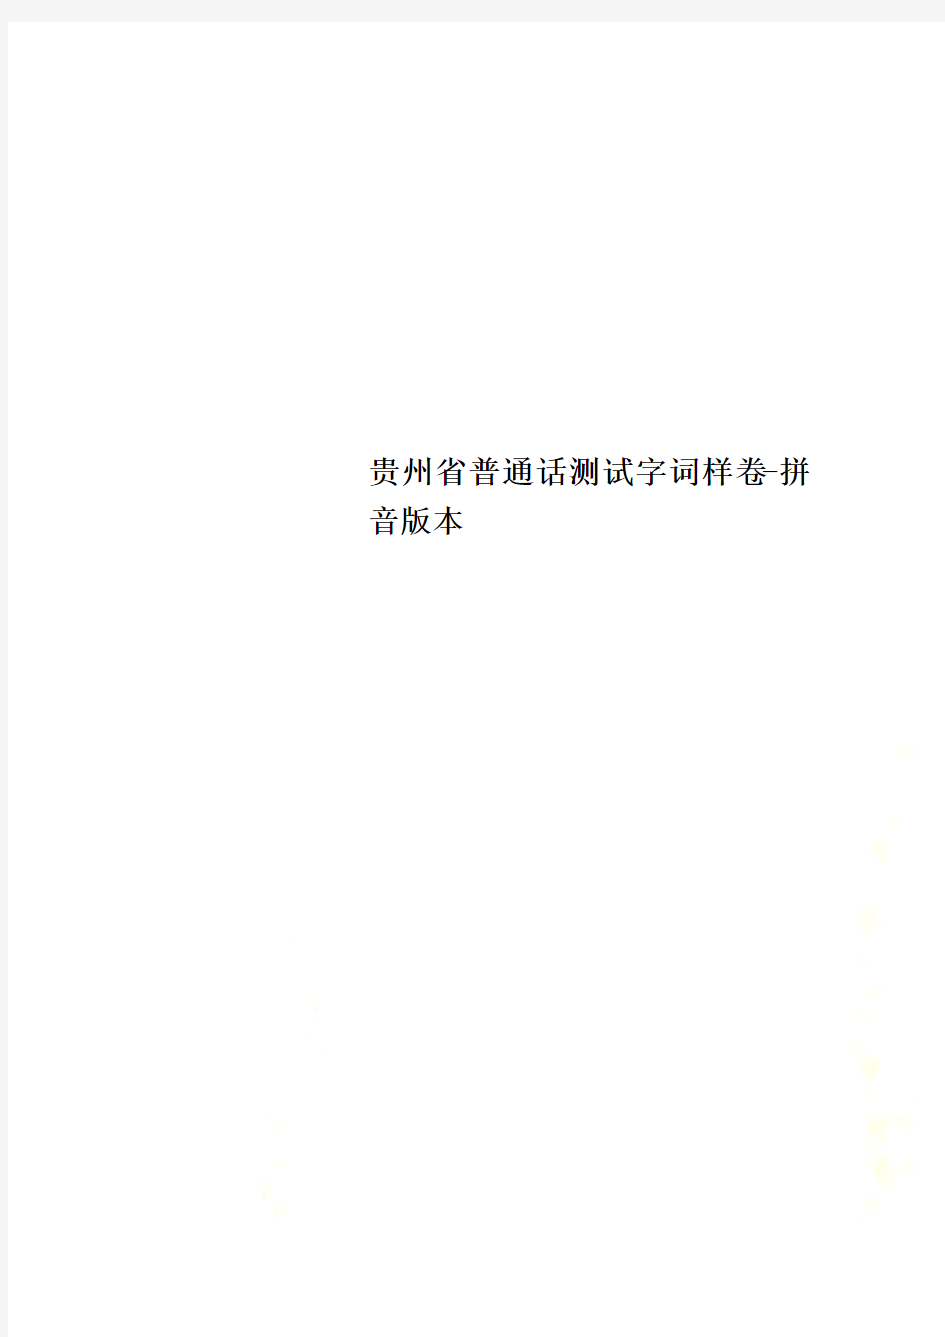 贵州省普通话测试字词样卷-拼音版本